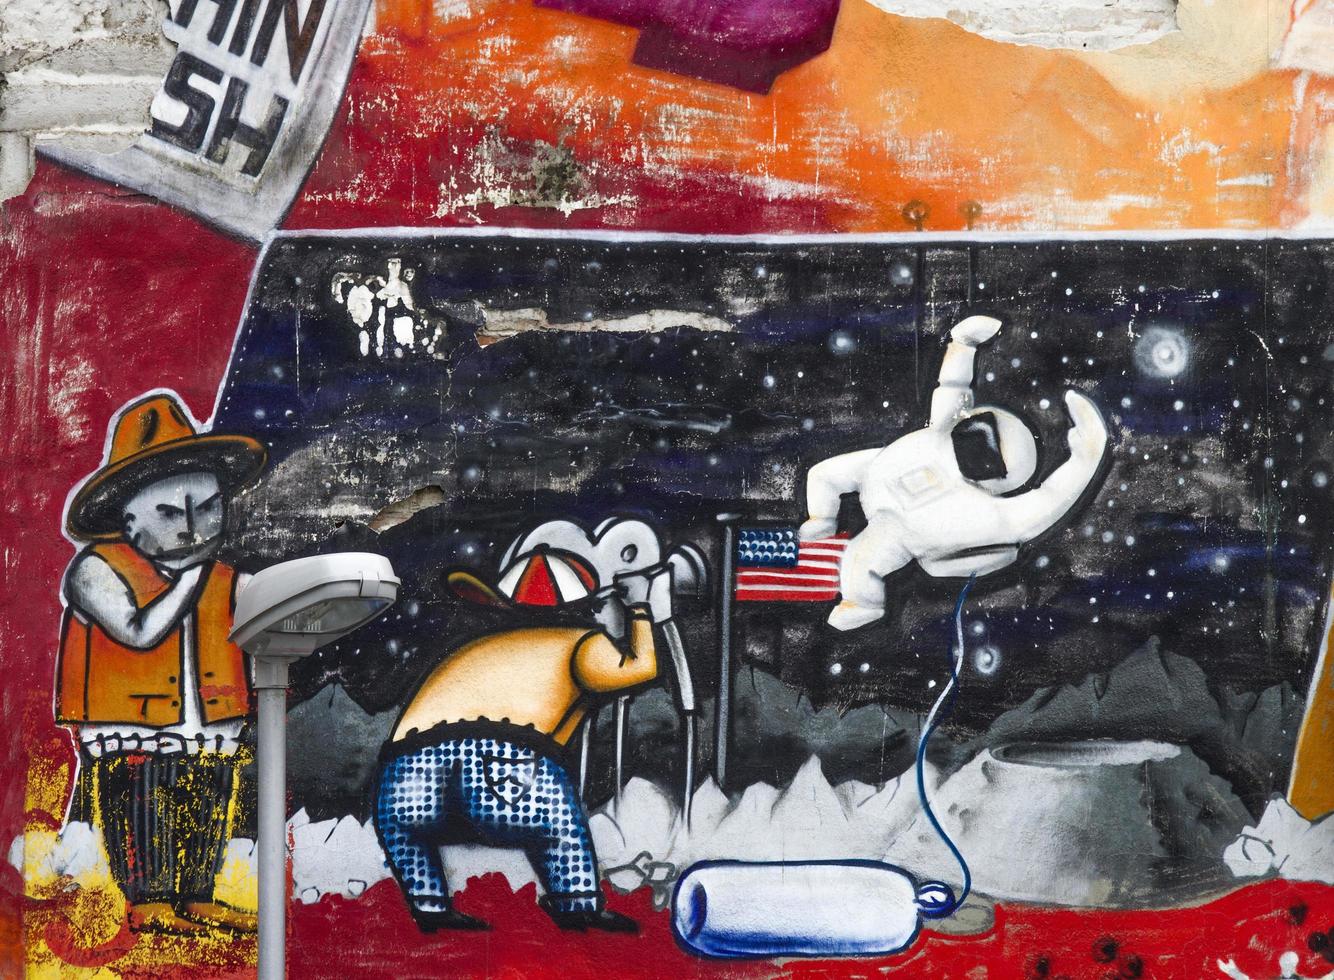 belgrado, serbia, 2014 - graffiti en las paredes de savamala en belgrado. proyecto red bull door deco transforma puertas viejas y deterioradas en savamala en un campo creativo para artistas de graffiti foto